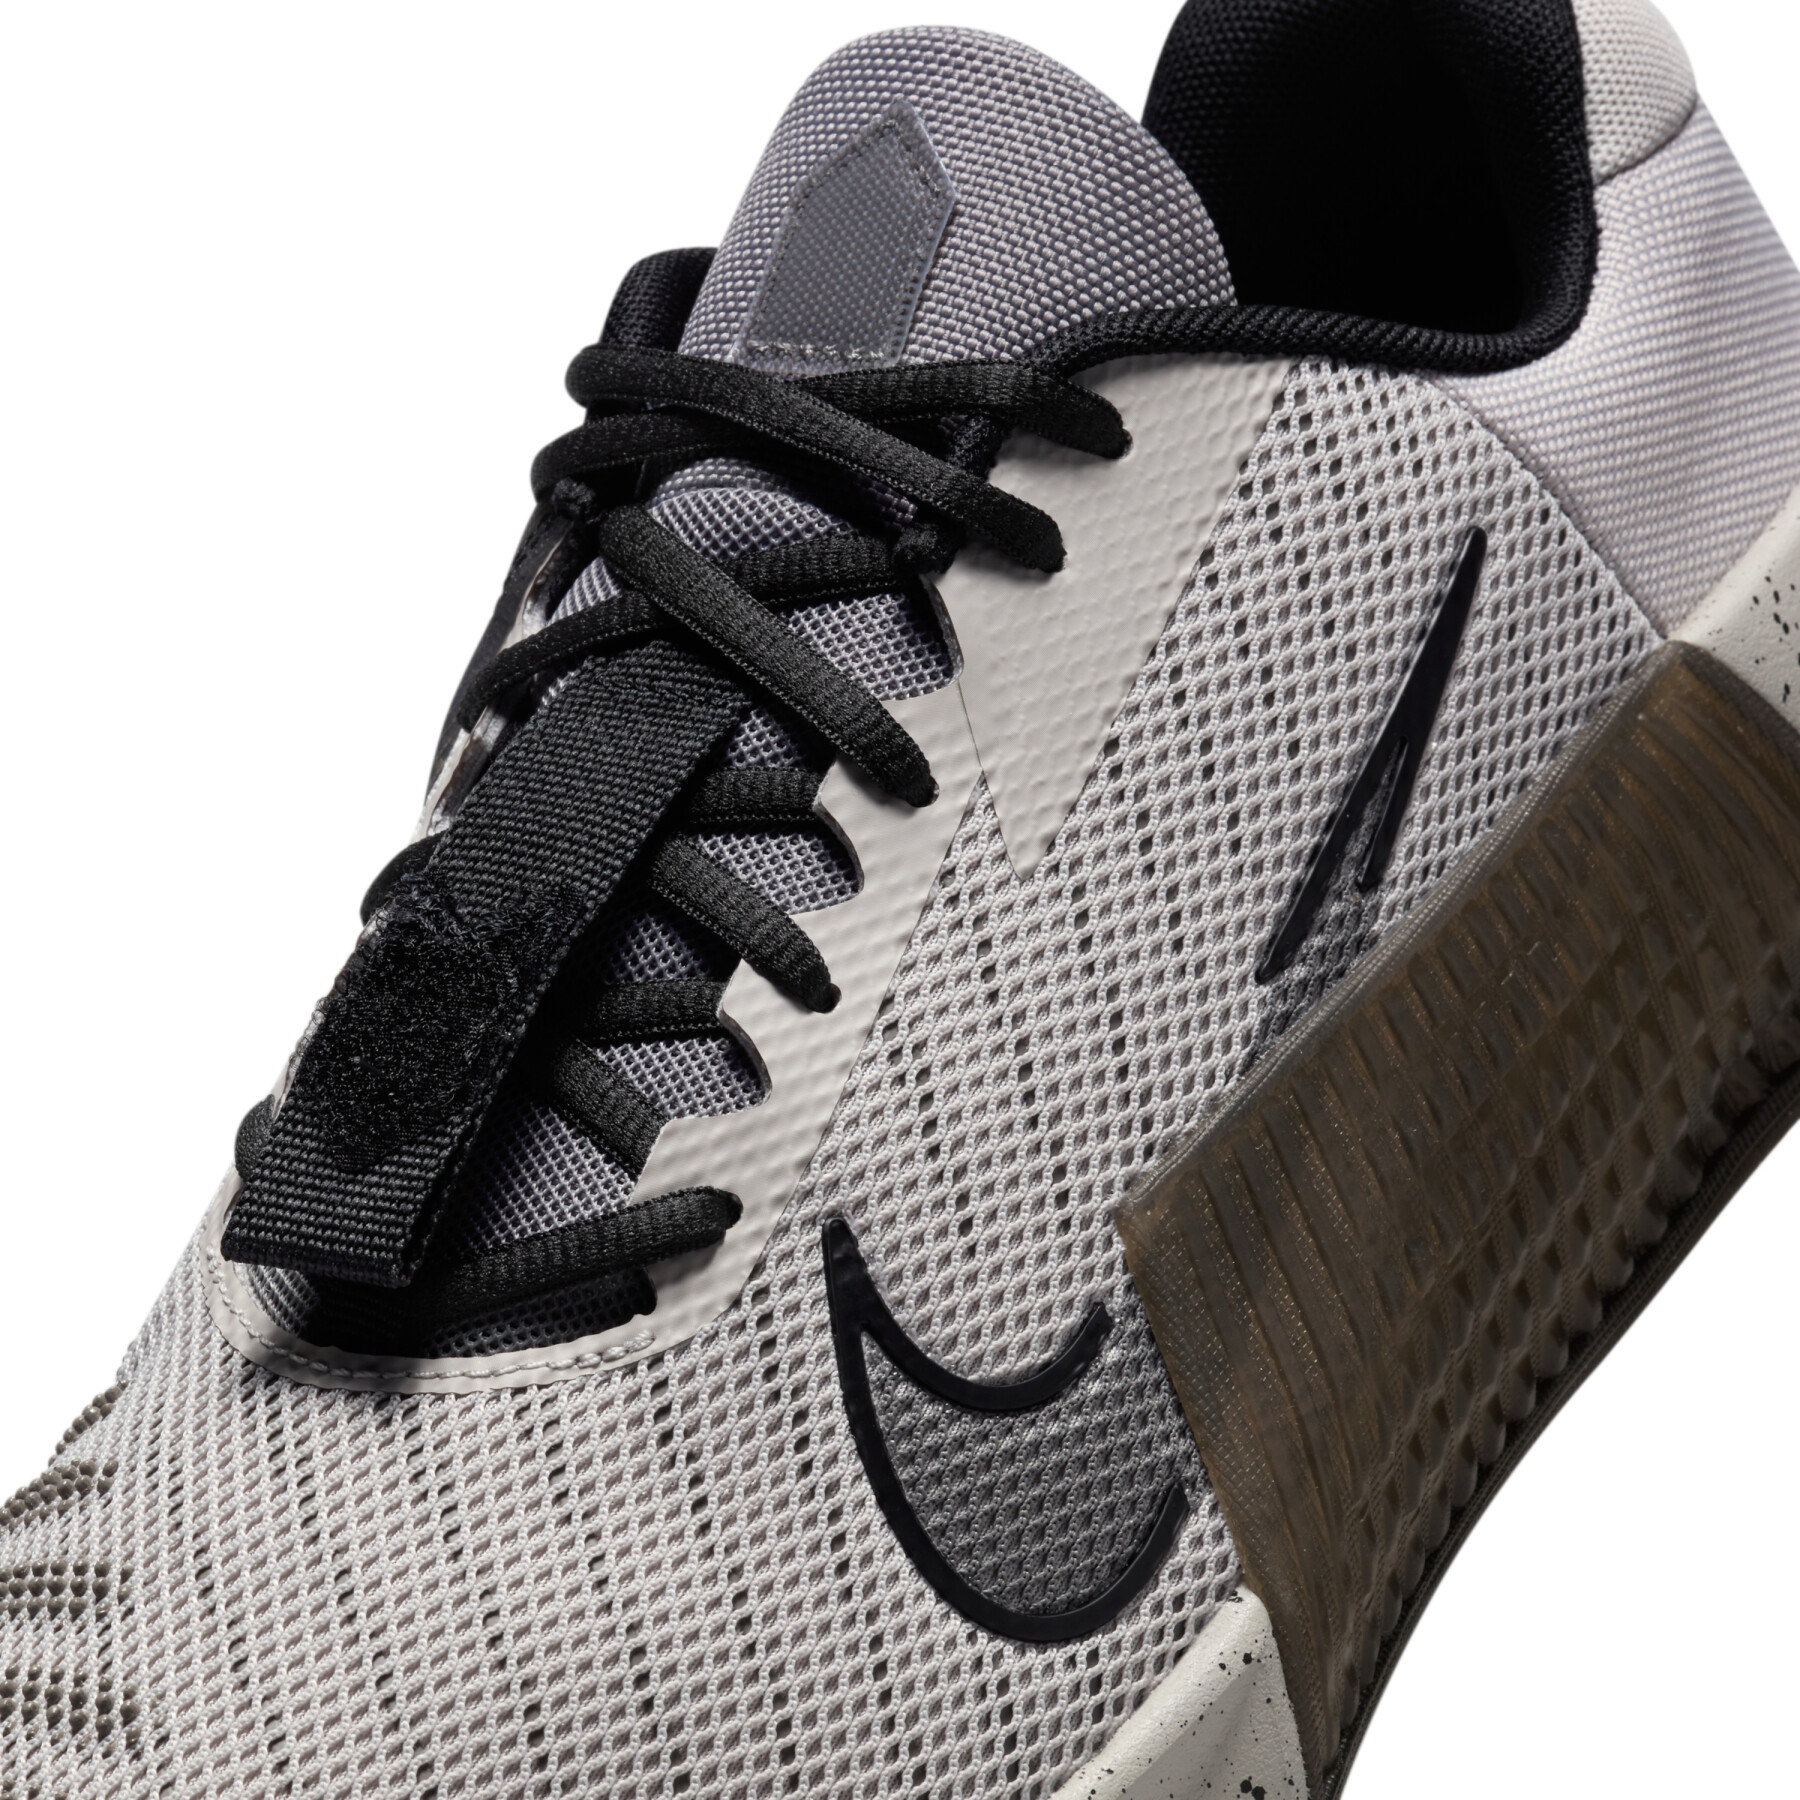 Cross training schoenen Nike Metcon 9